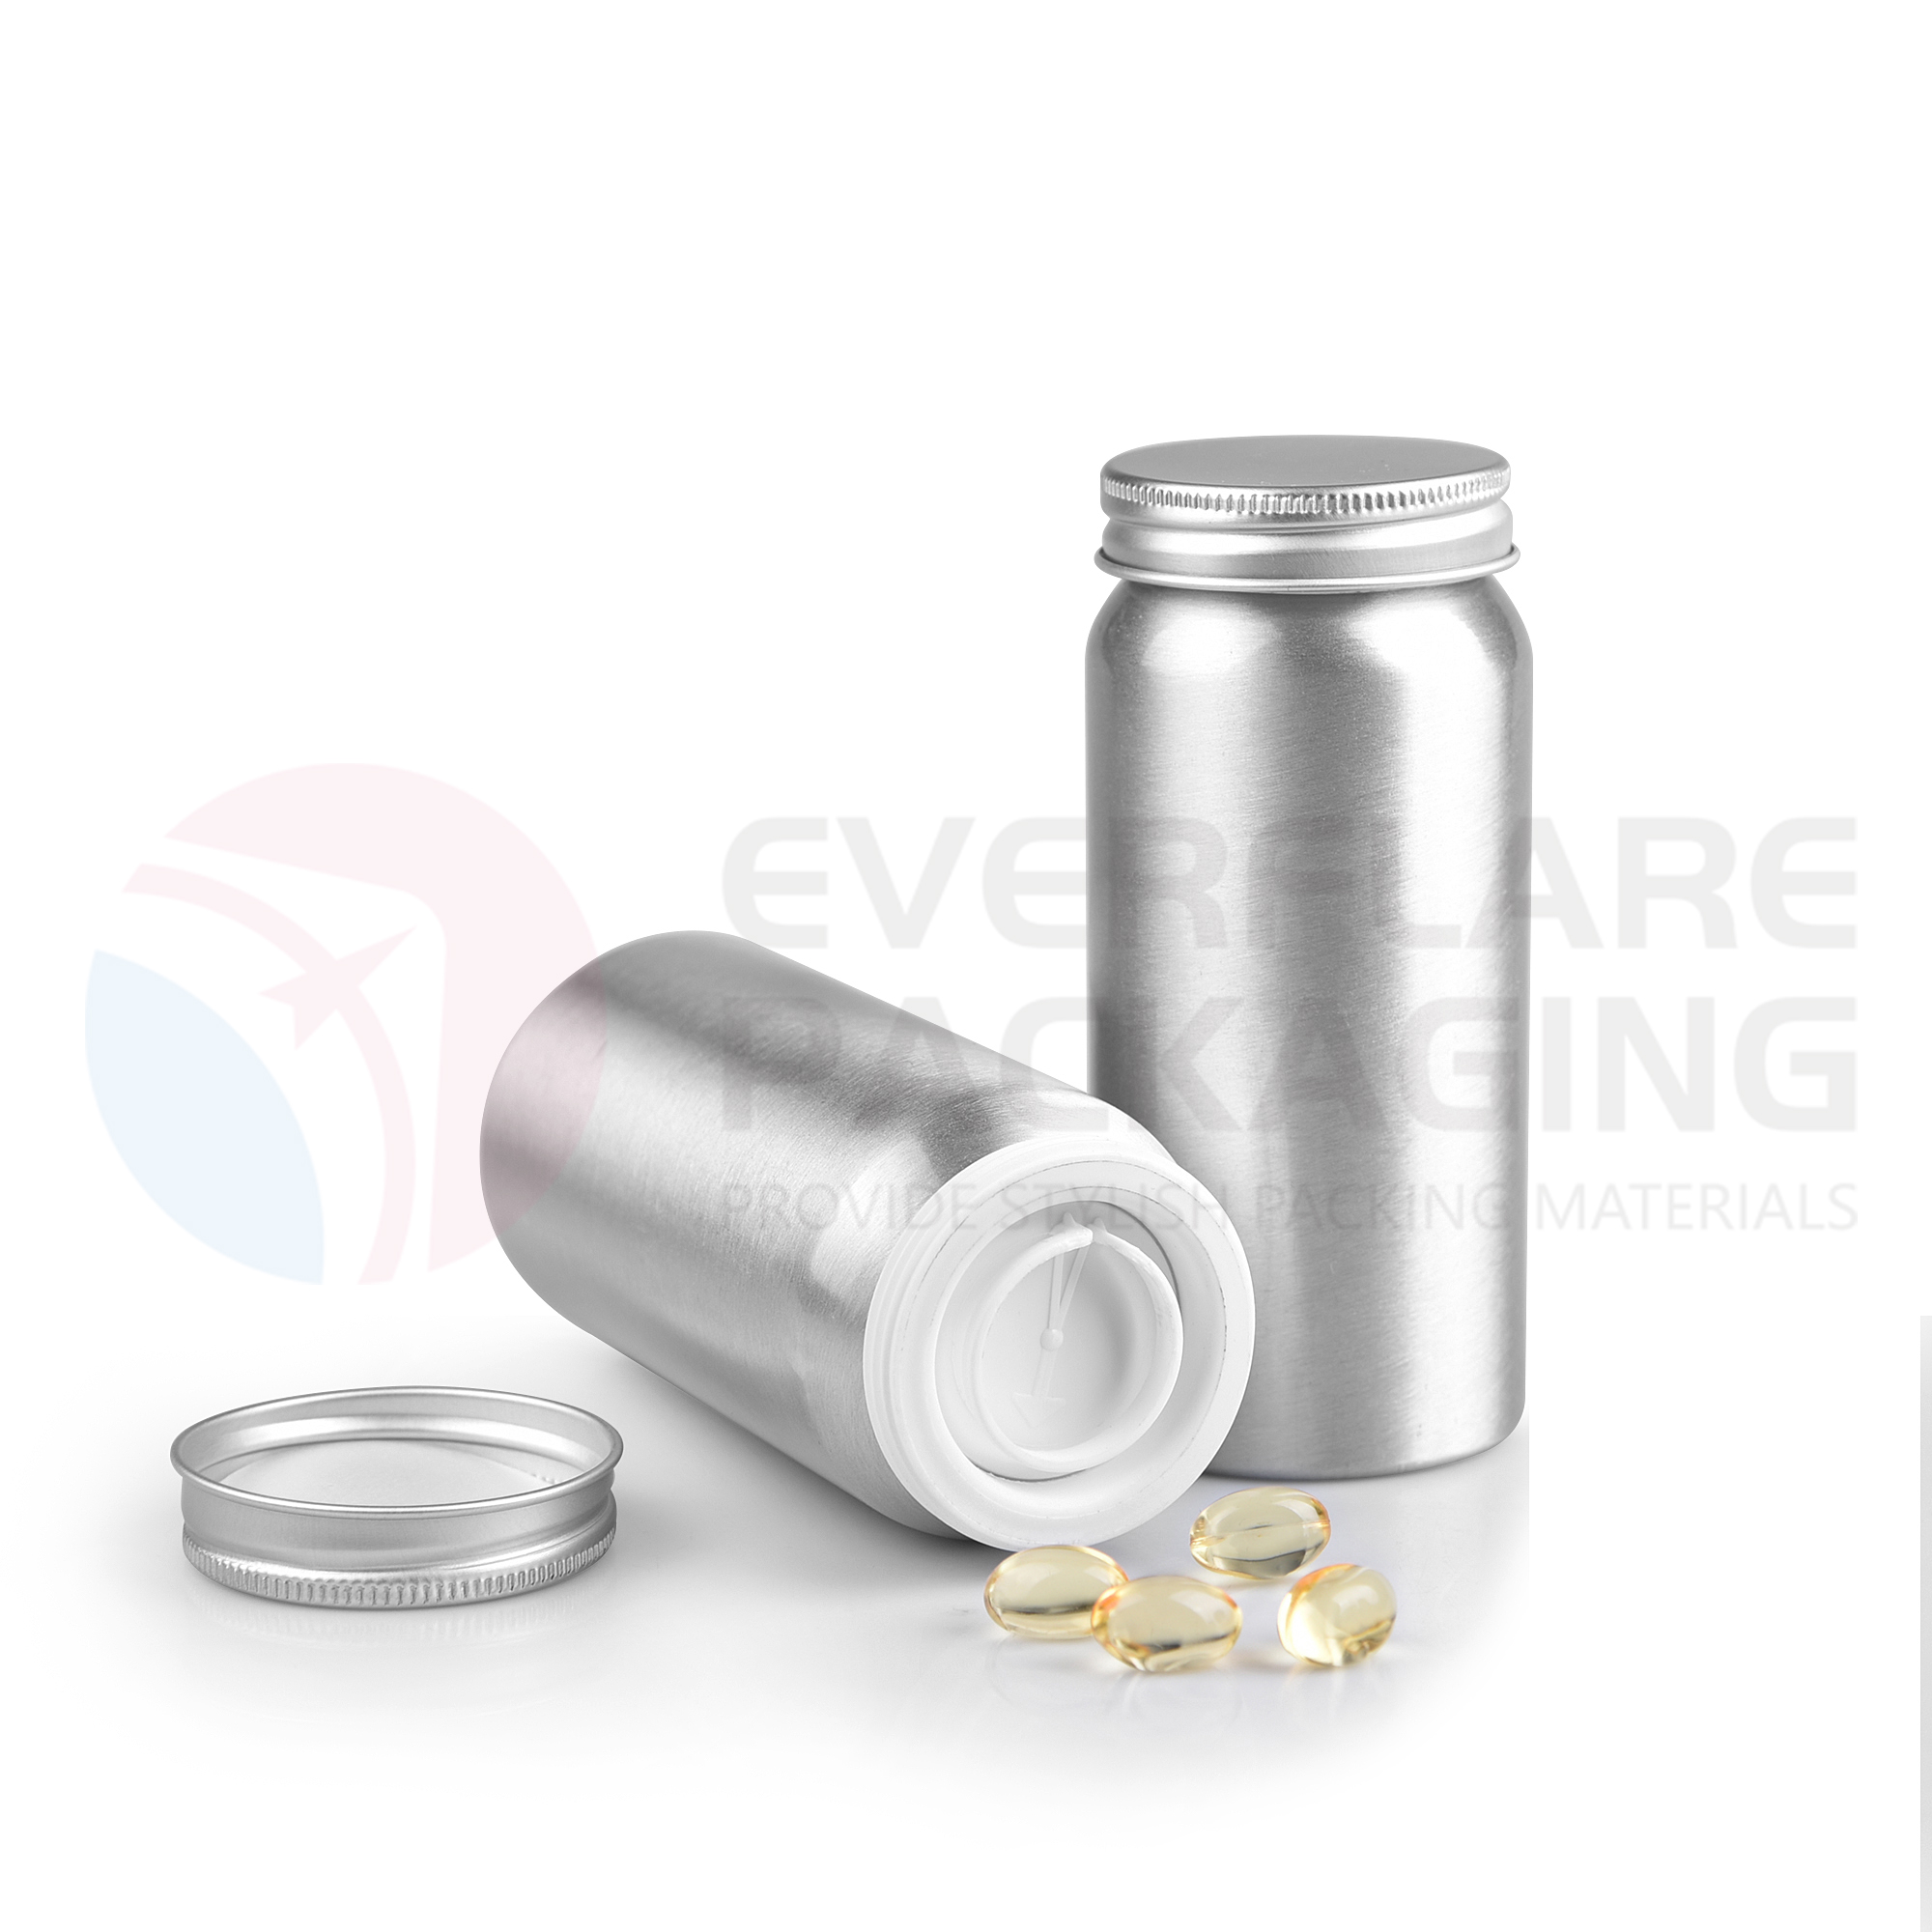 Elikagaien kalitateko aluminiozko botila farmazeutikoa kapsularen botila fabrikatzailea